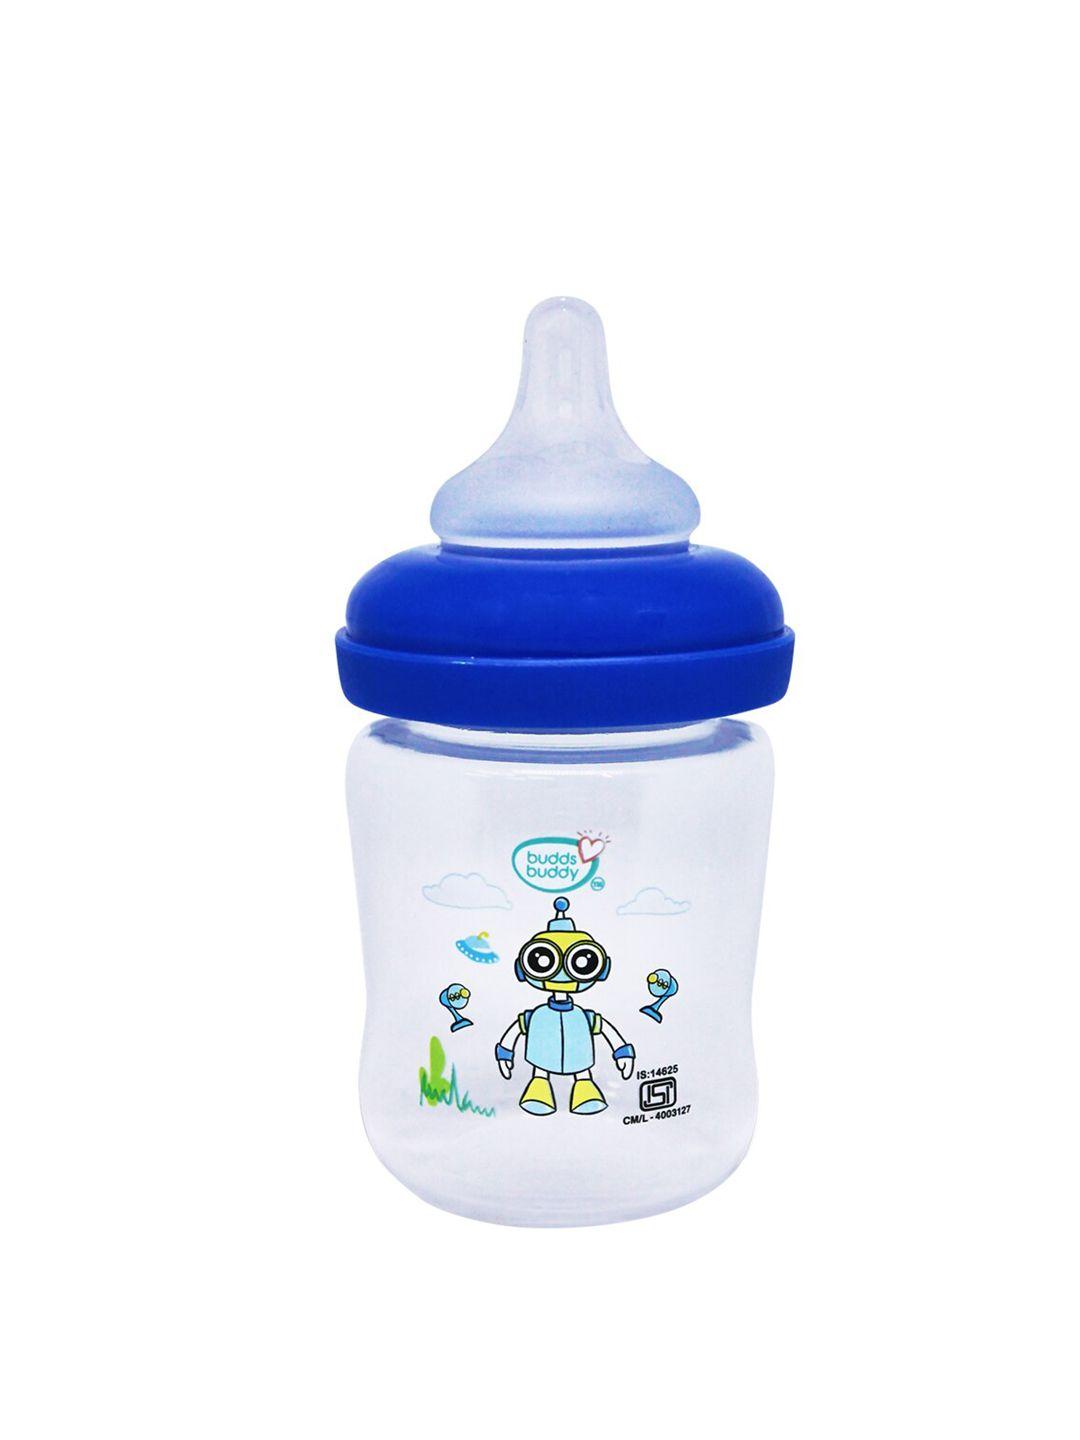 buddsbuddy infant kids white & blue printed regular neck feeding bottle 125ml